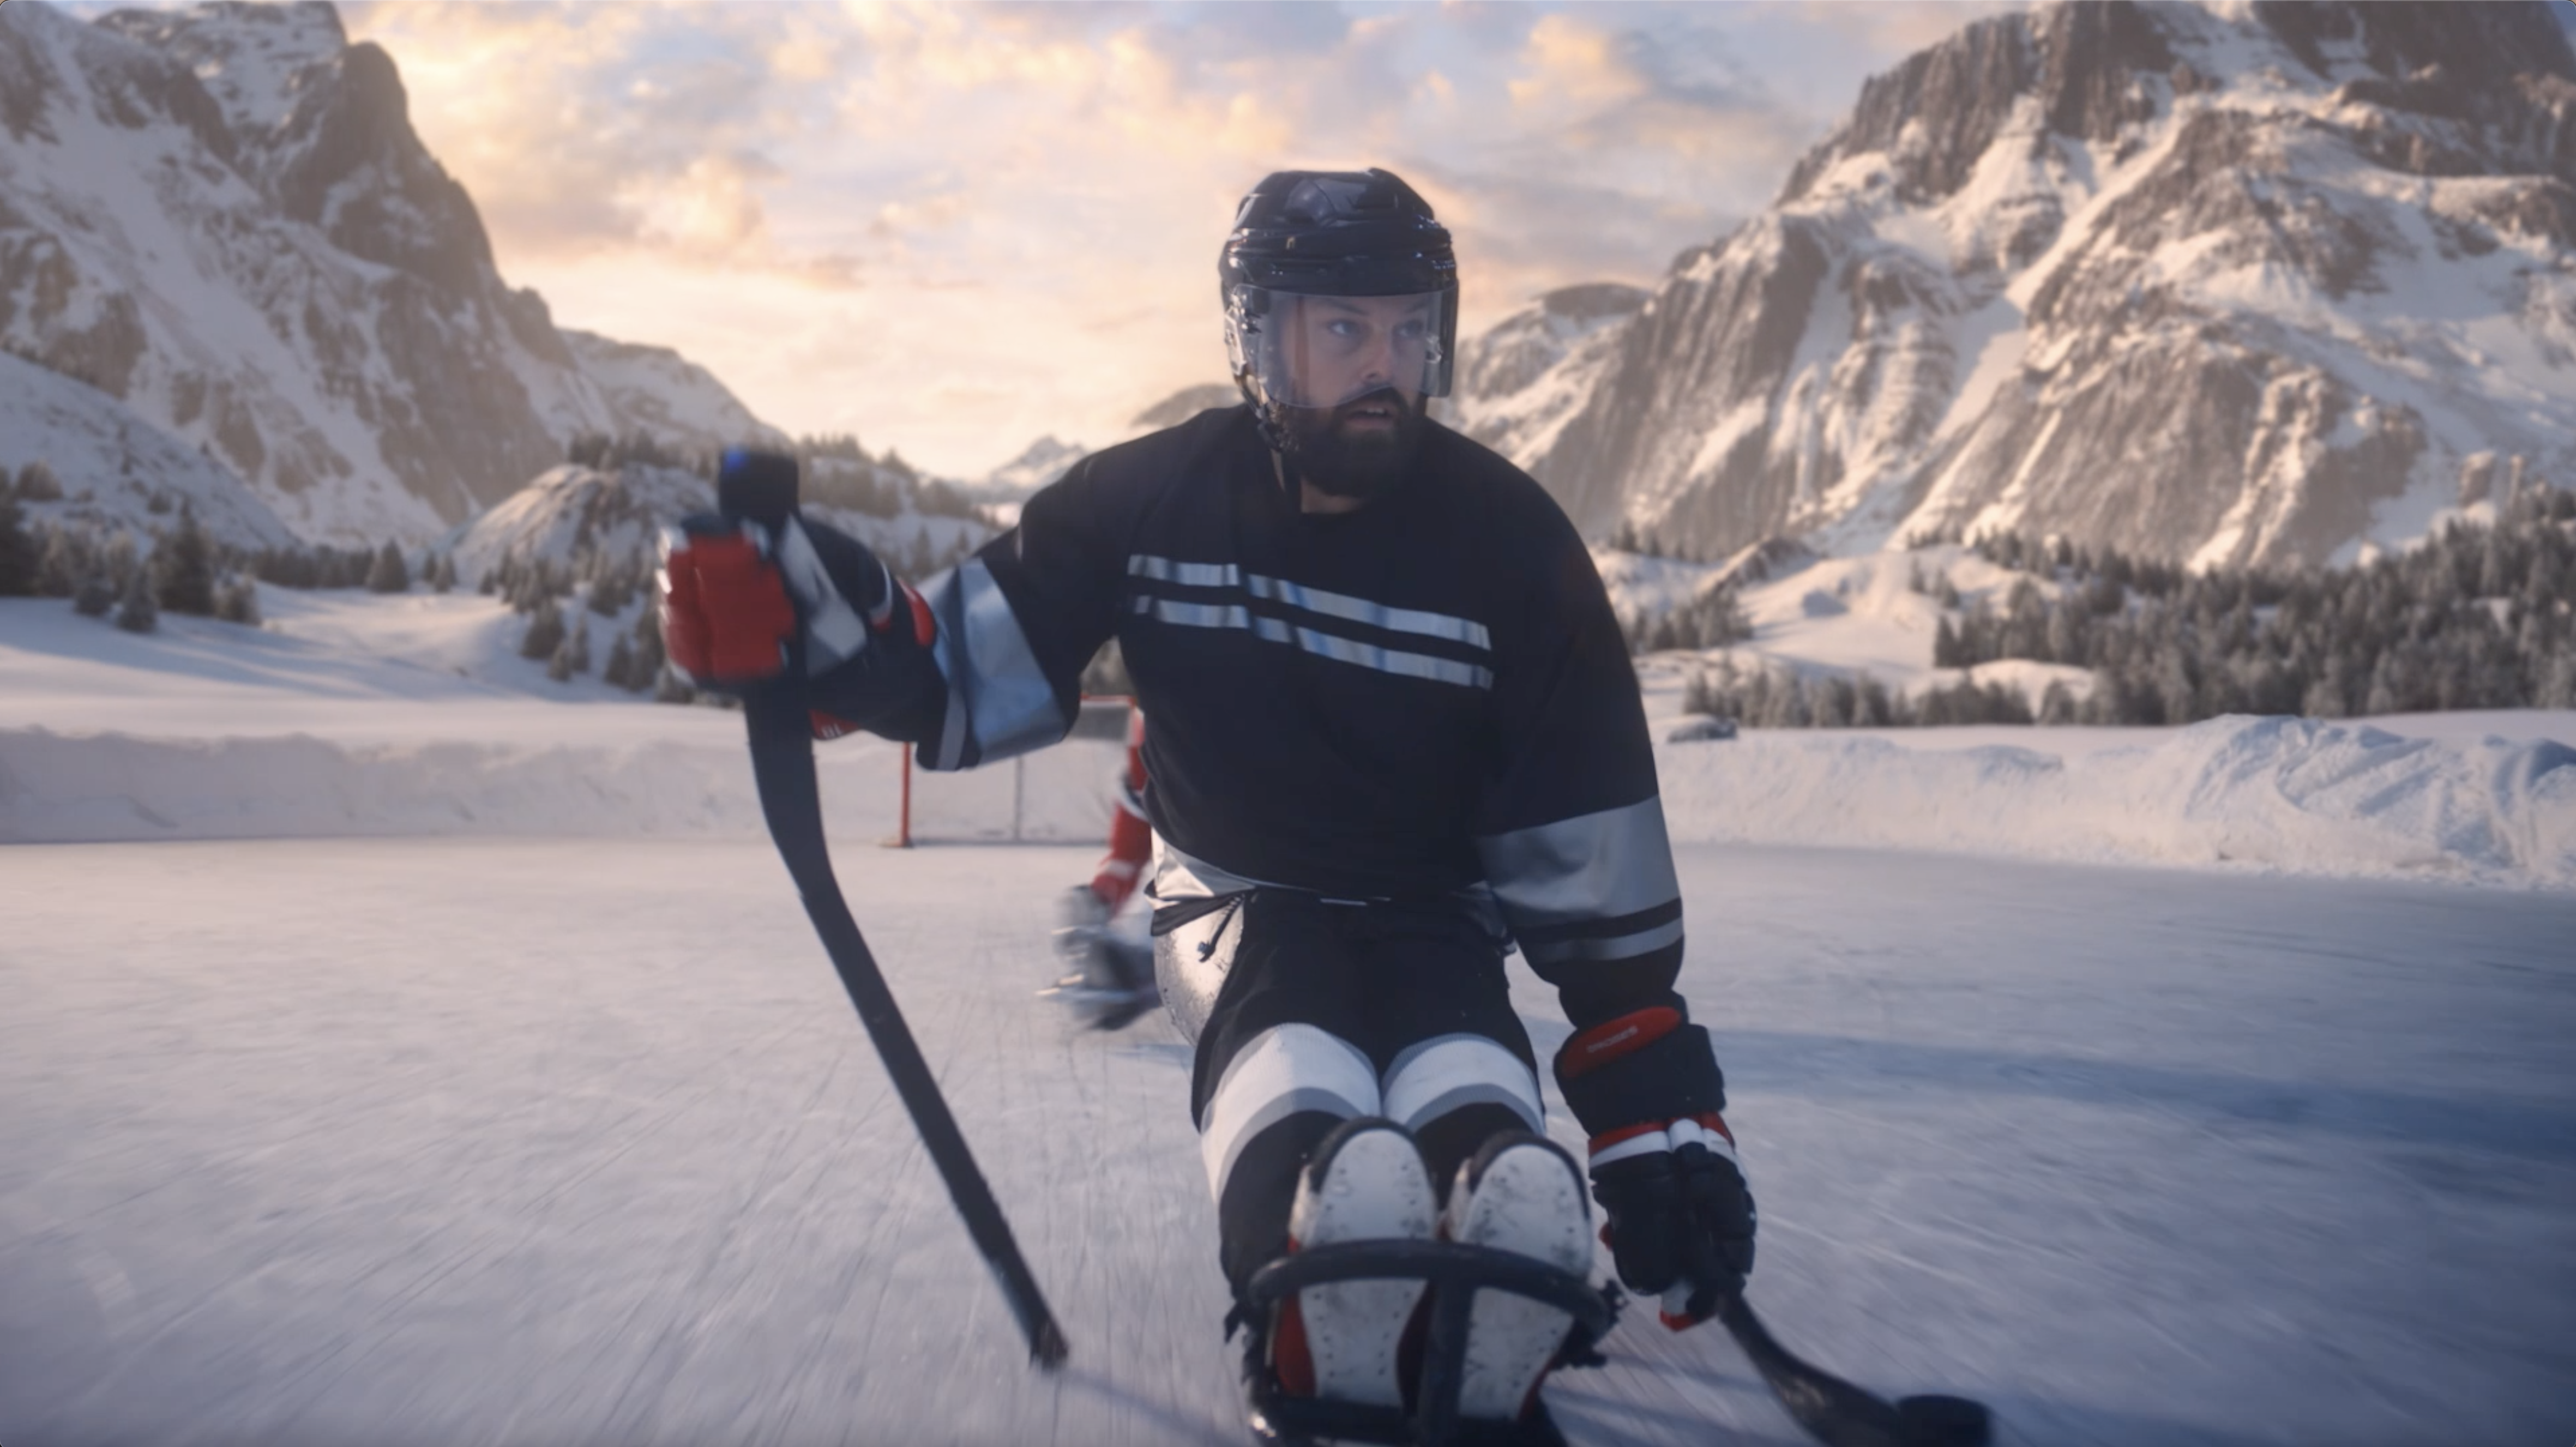 Параолимпийски състезател по хокей се състезава яростно по леда със стик в ръка, с червена хокейна врата и заснежени планини на заден план.